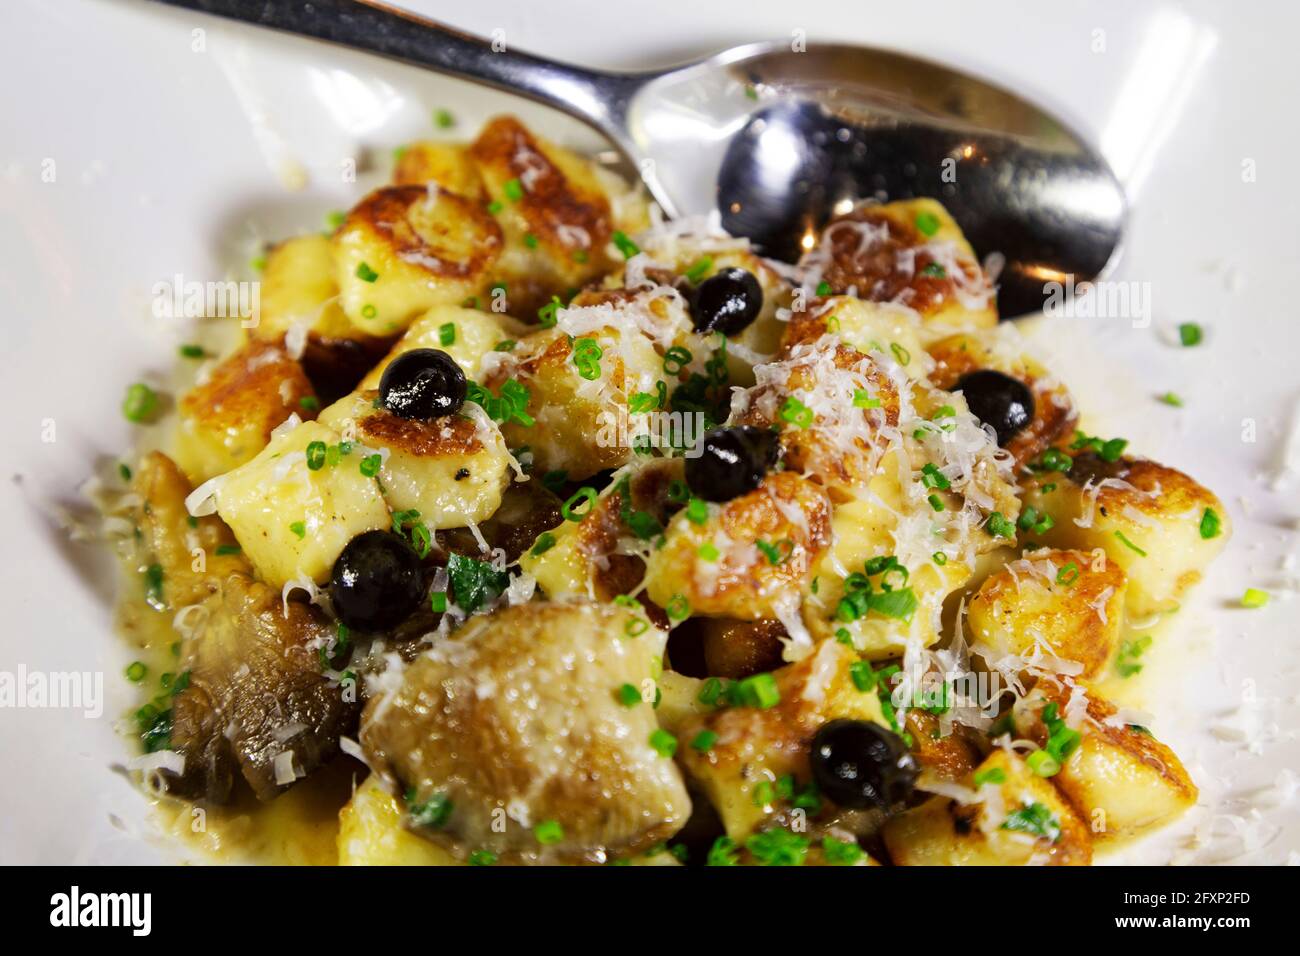 Gnocchi cocido con aceitunas y queso parmesano rallado. El plato está regado con aceite de oliva. Foto de stock